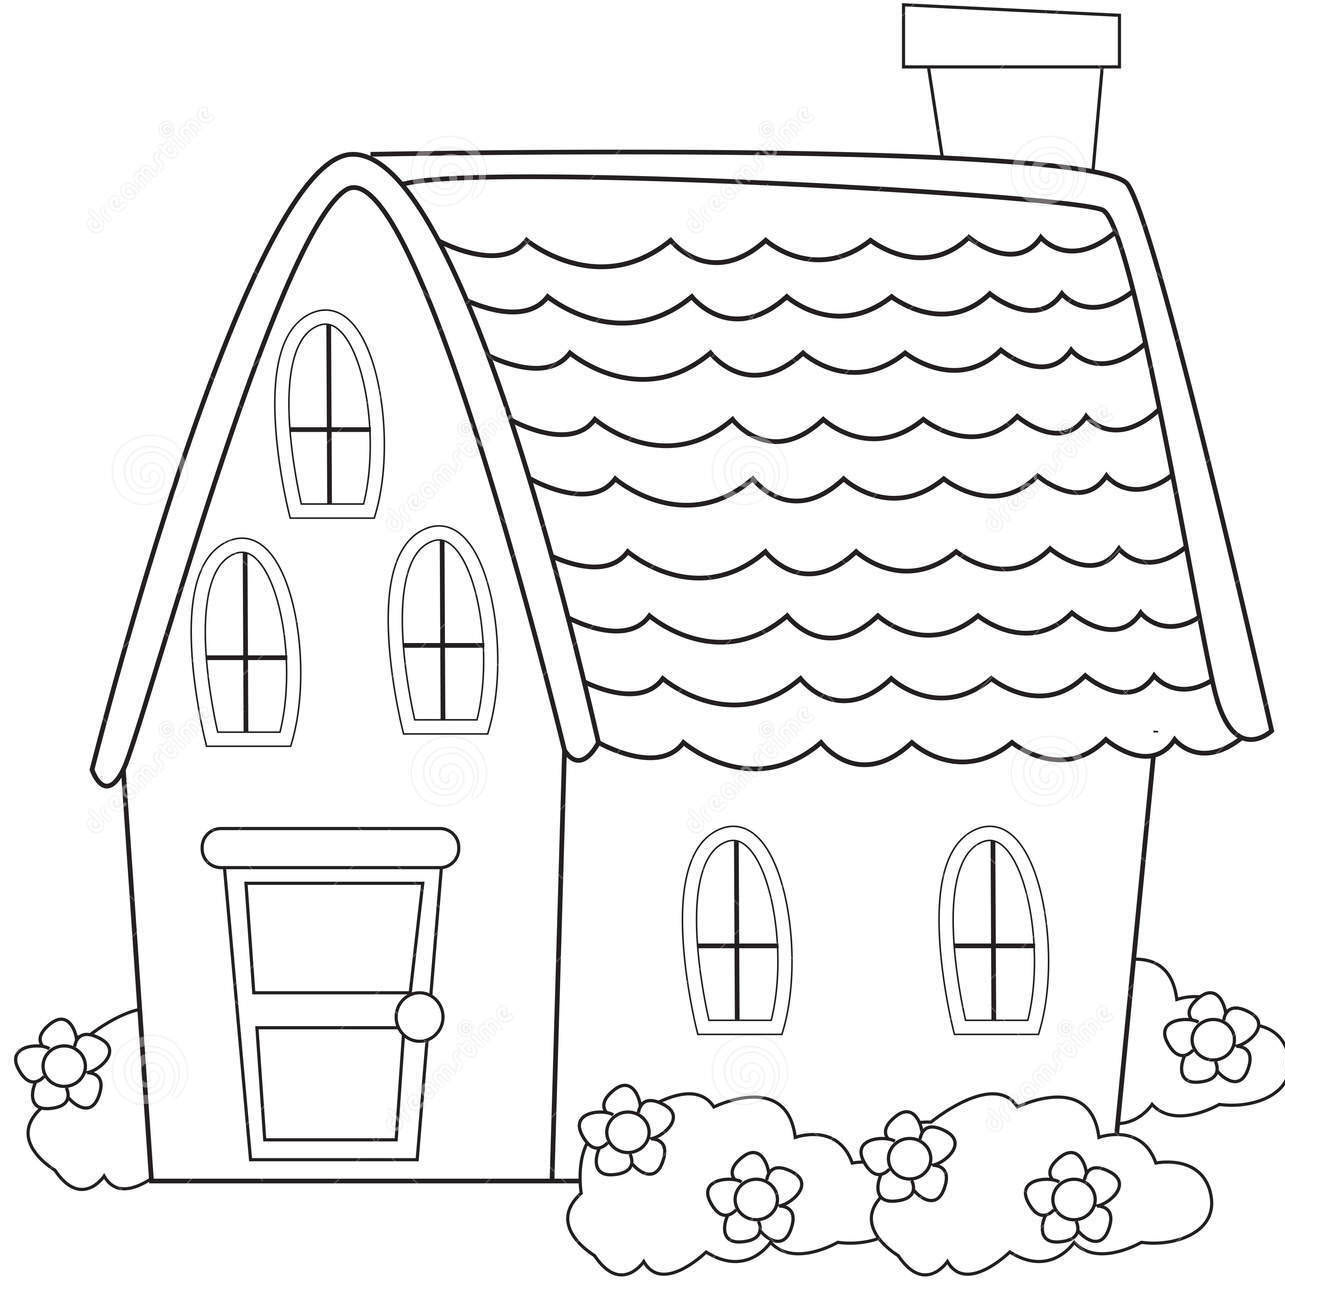 Những lợi ích dành cho bé khi vẽ tranh tô màu ngôi nhà